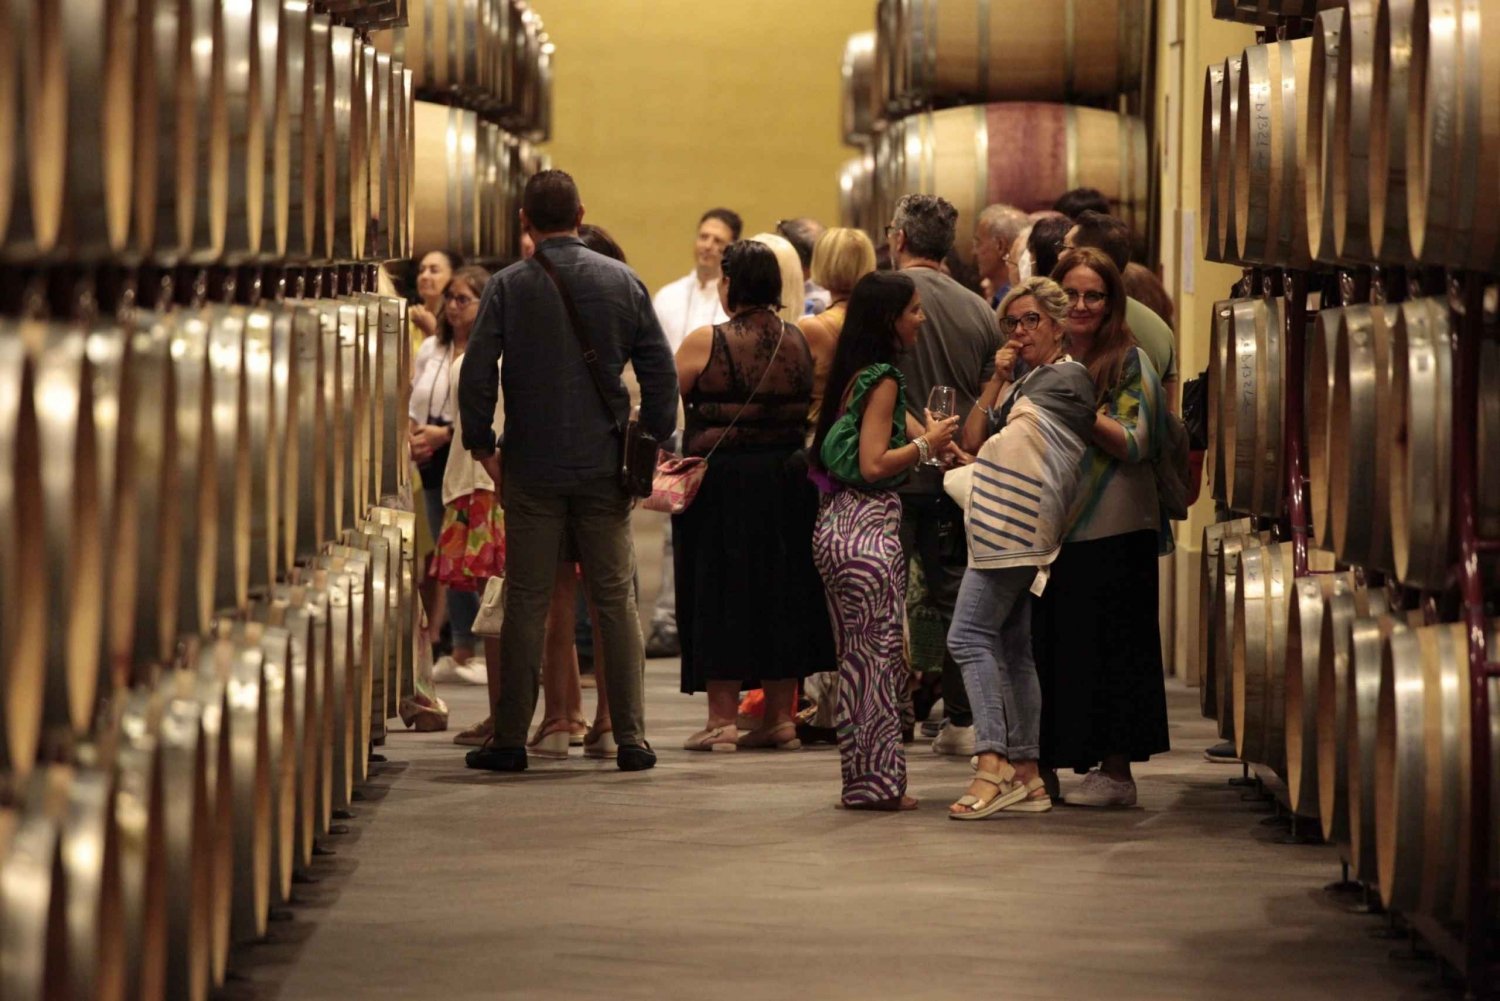 Visit and tasting at the Duca di Salaparuta winery